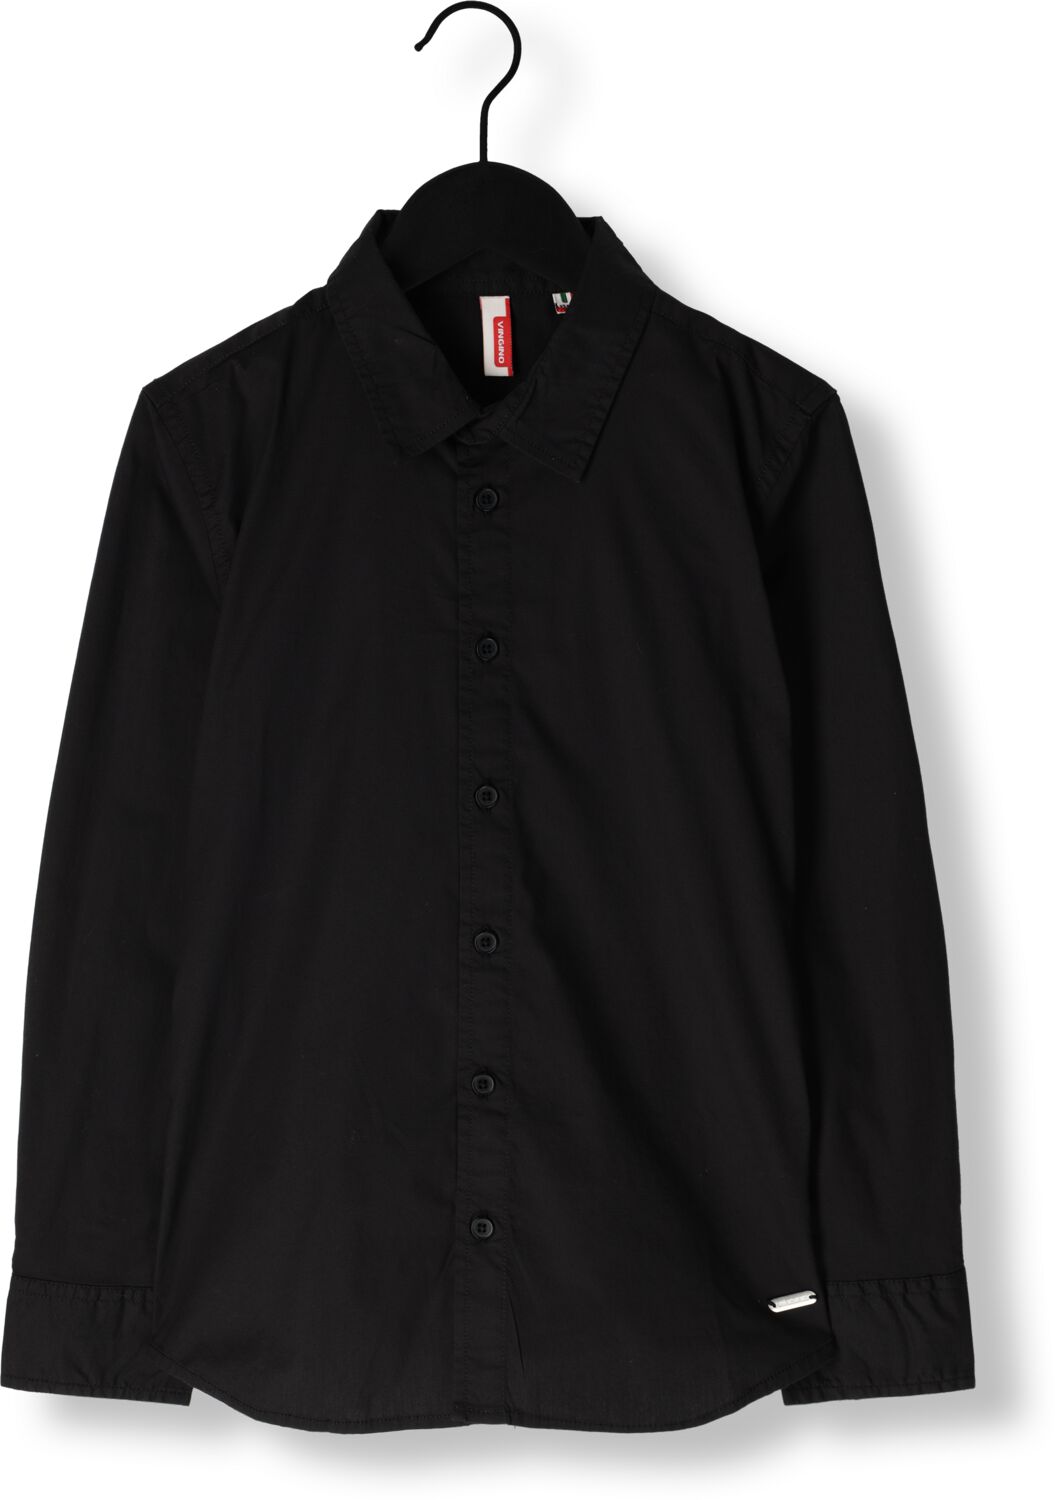 VINGINO overhemd Lasic zwart Jongens Stretchkatoen Klassieke kraag 152